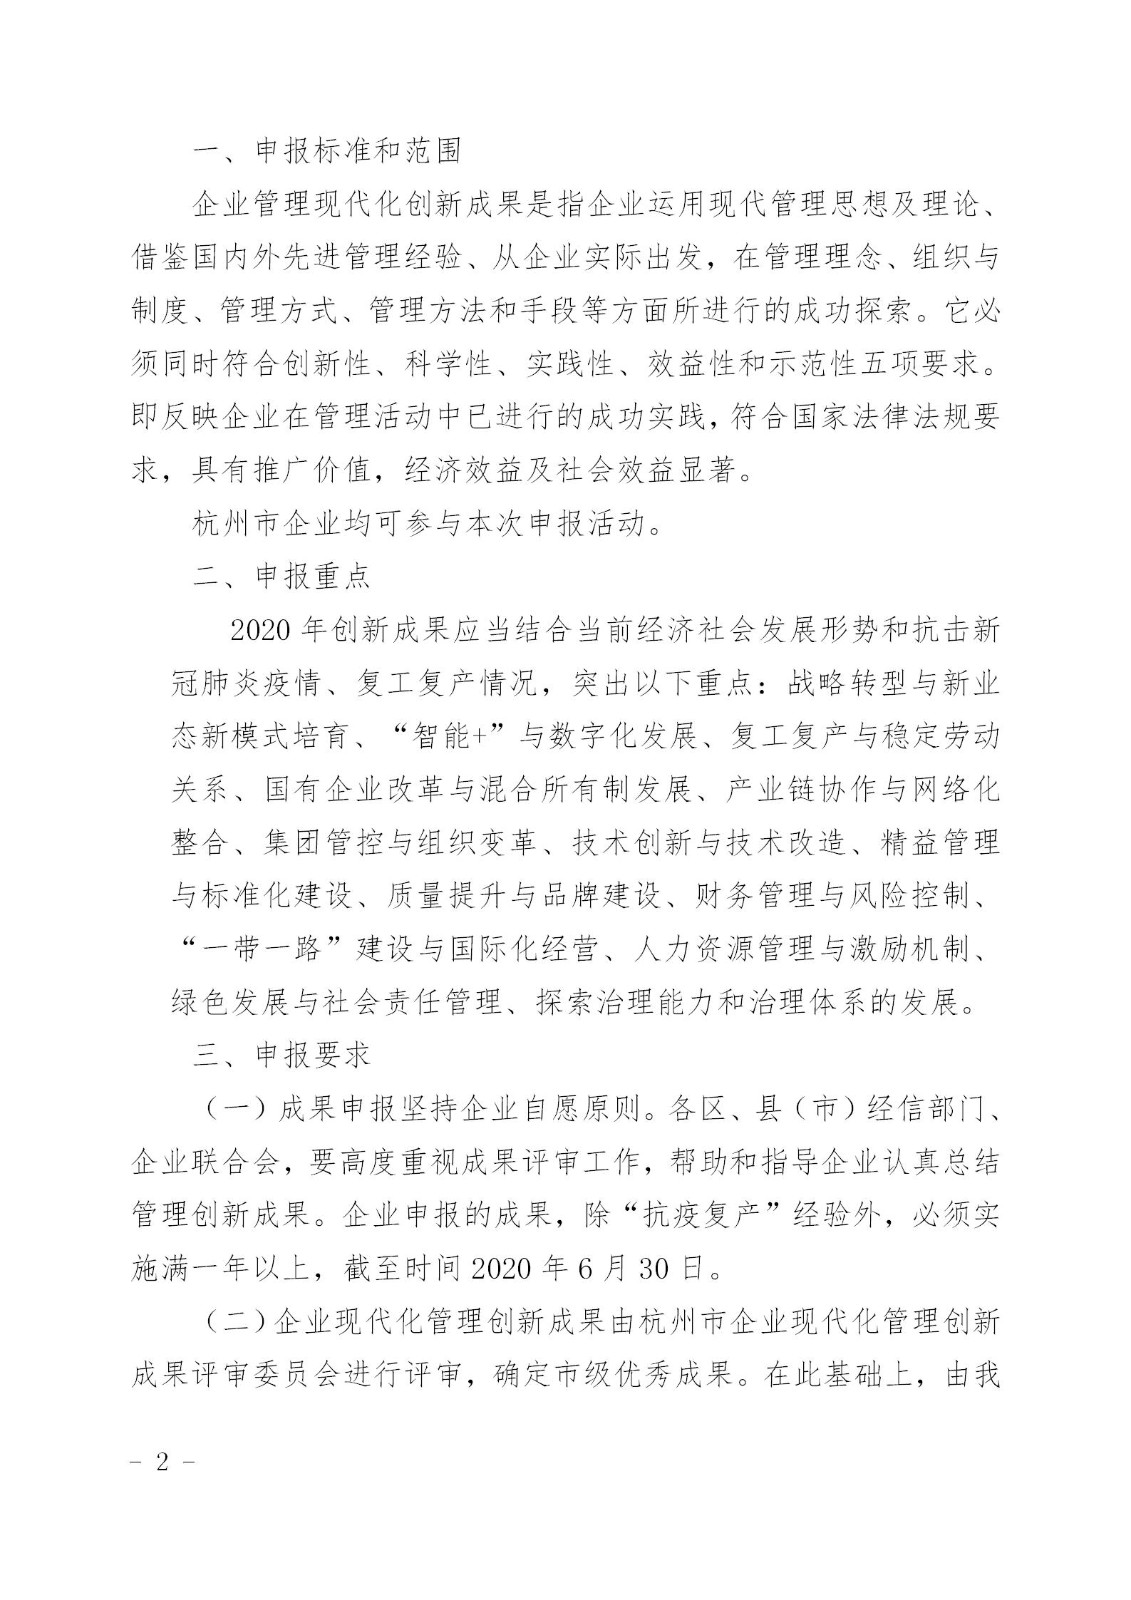 2020年杭州市企业管理现代化创新成果_02.jpg